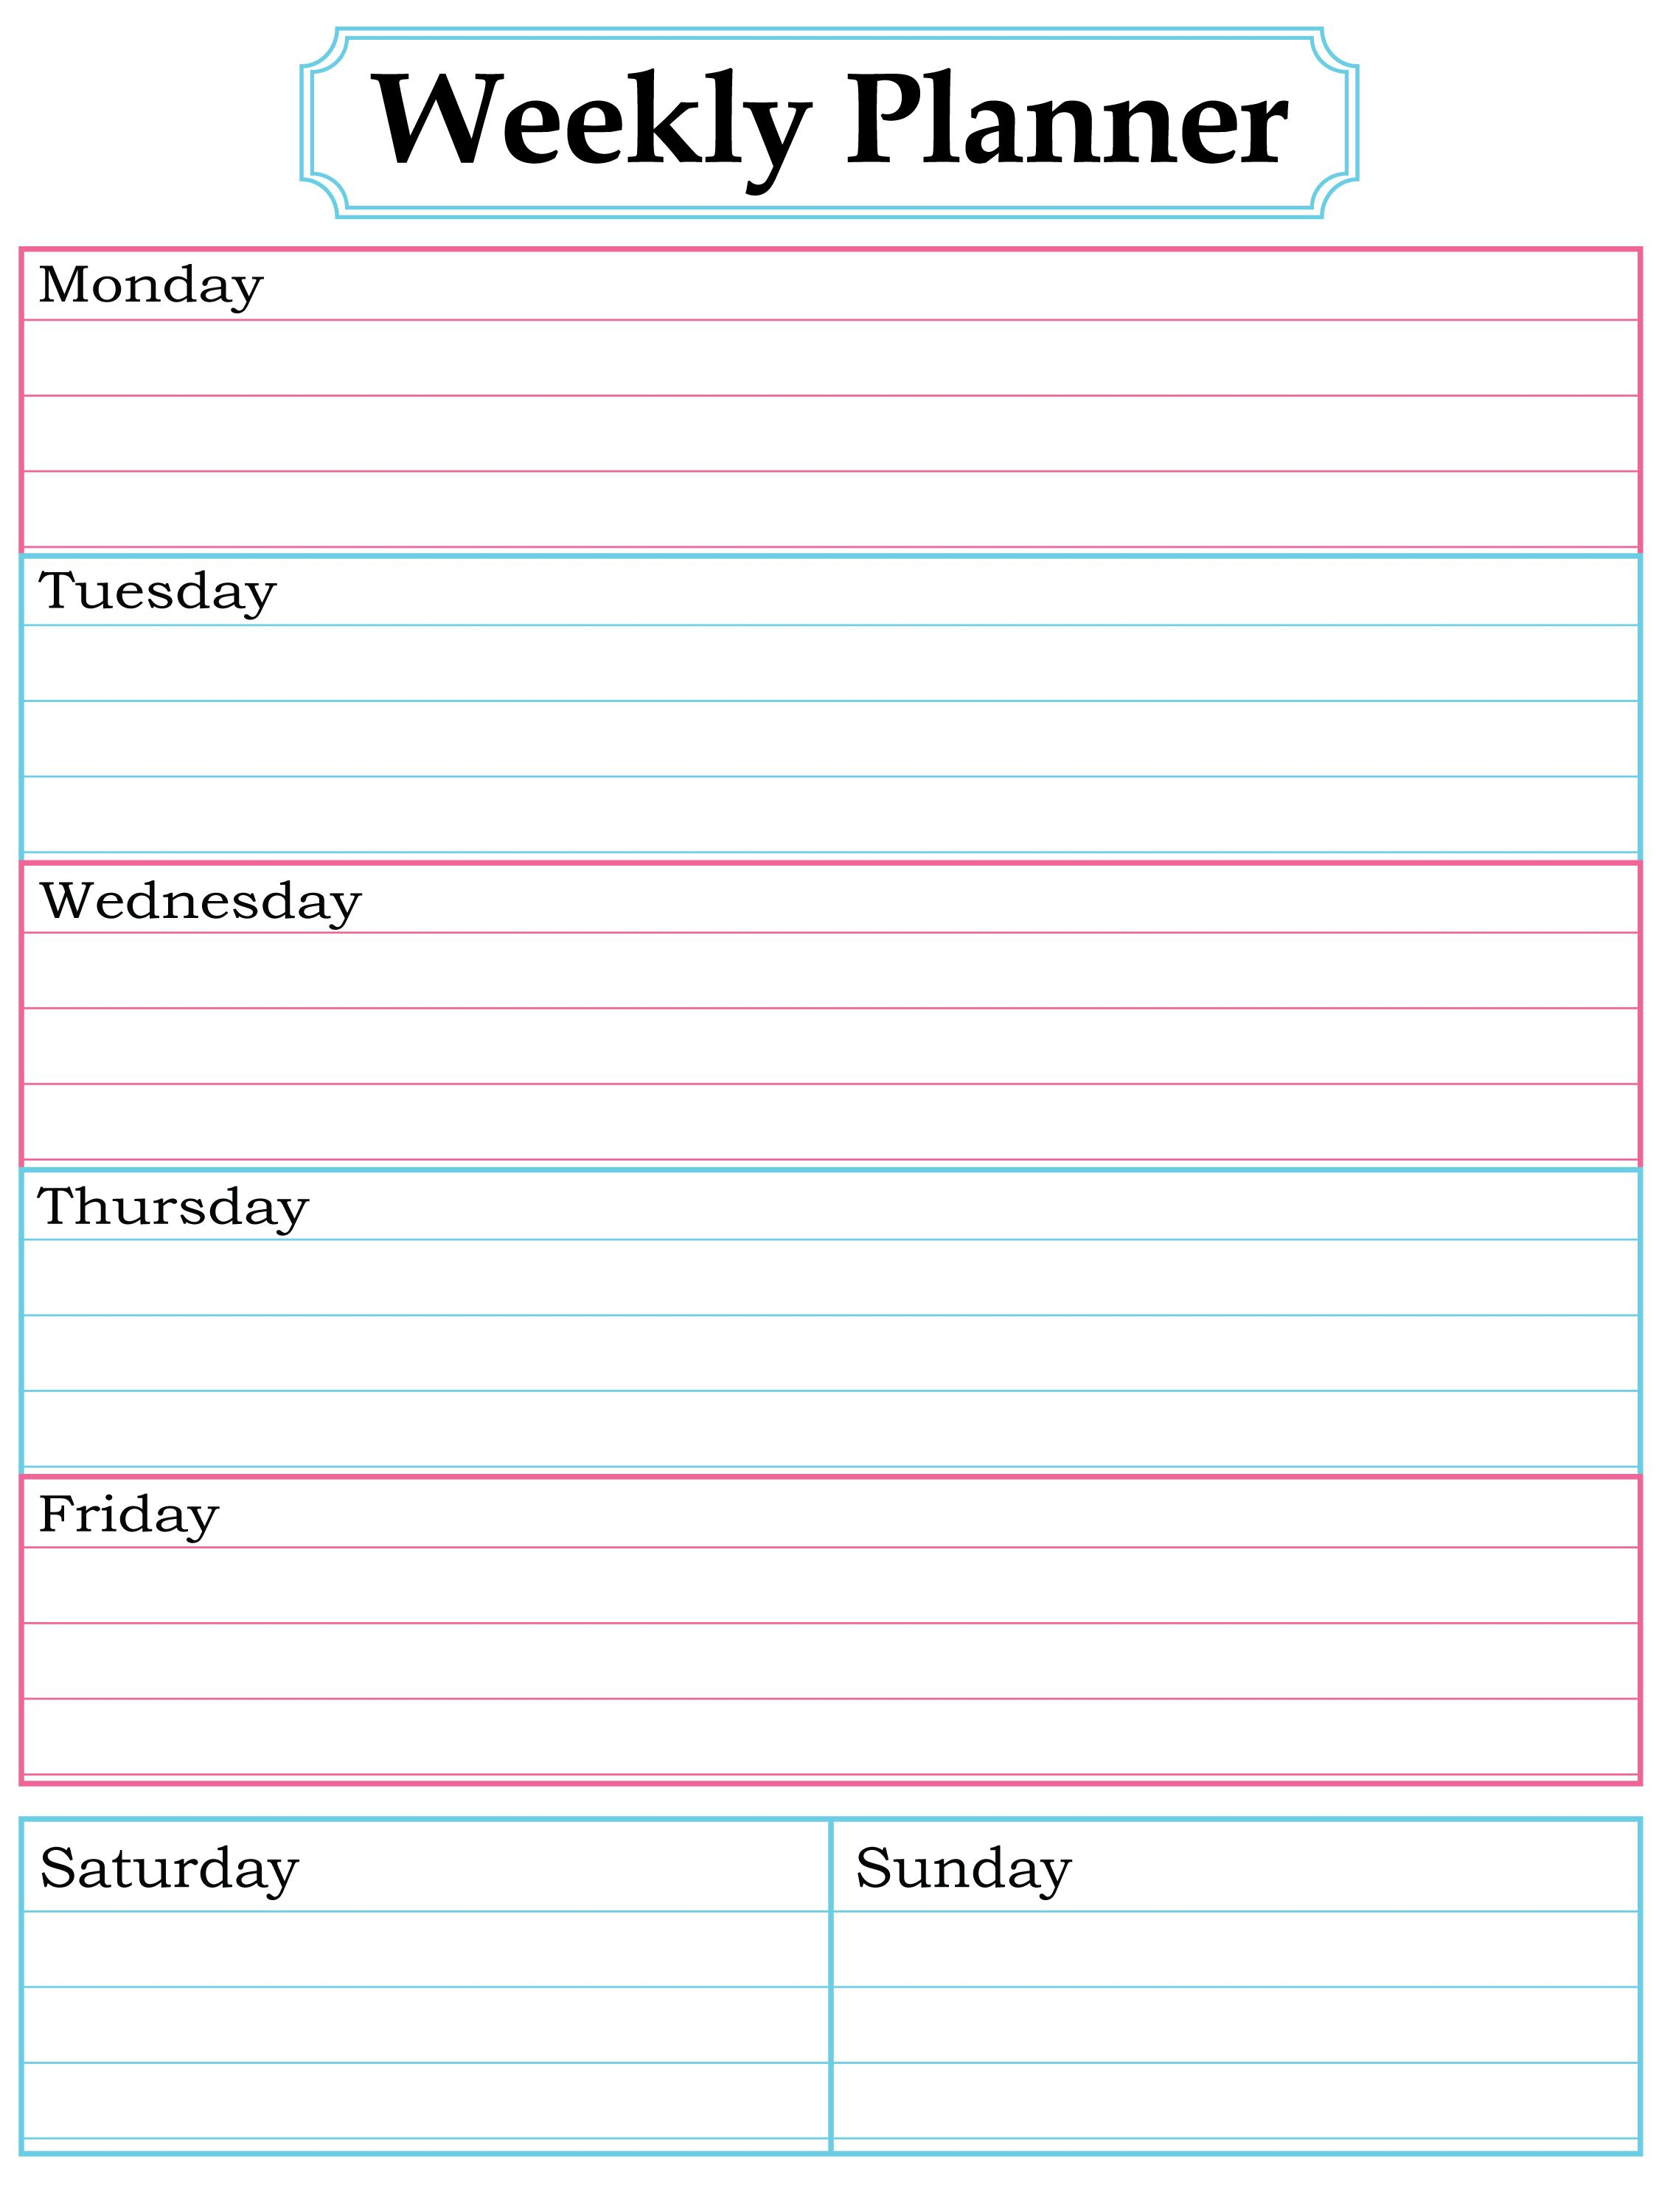 Weekly Planner Page | June 2016 | Weekly Planner, Printable Planner - Free Printable Weekly Planner